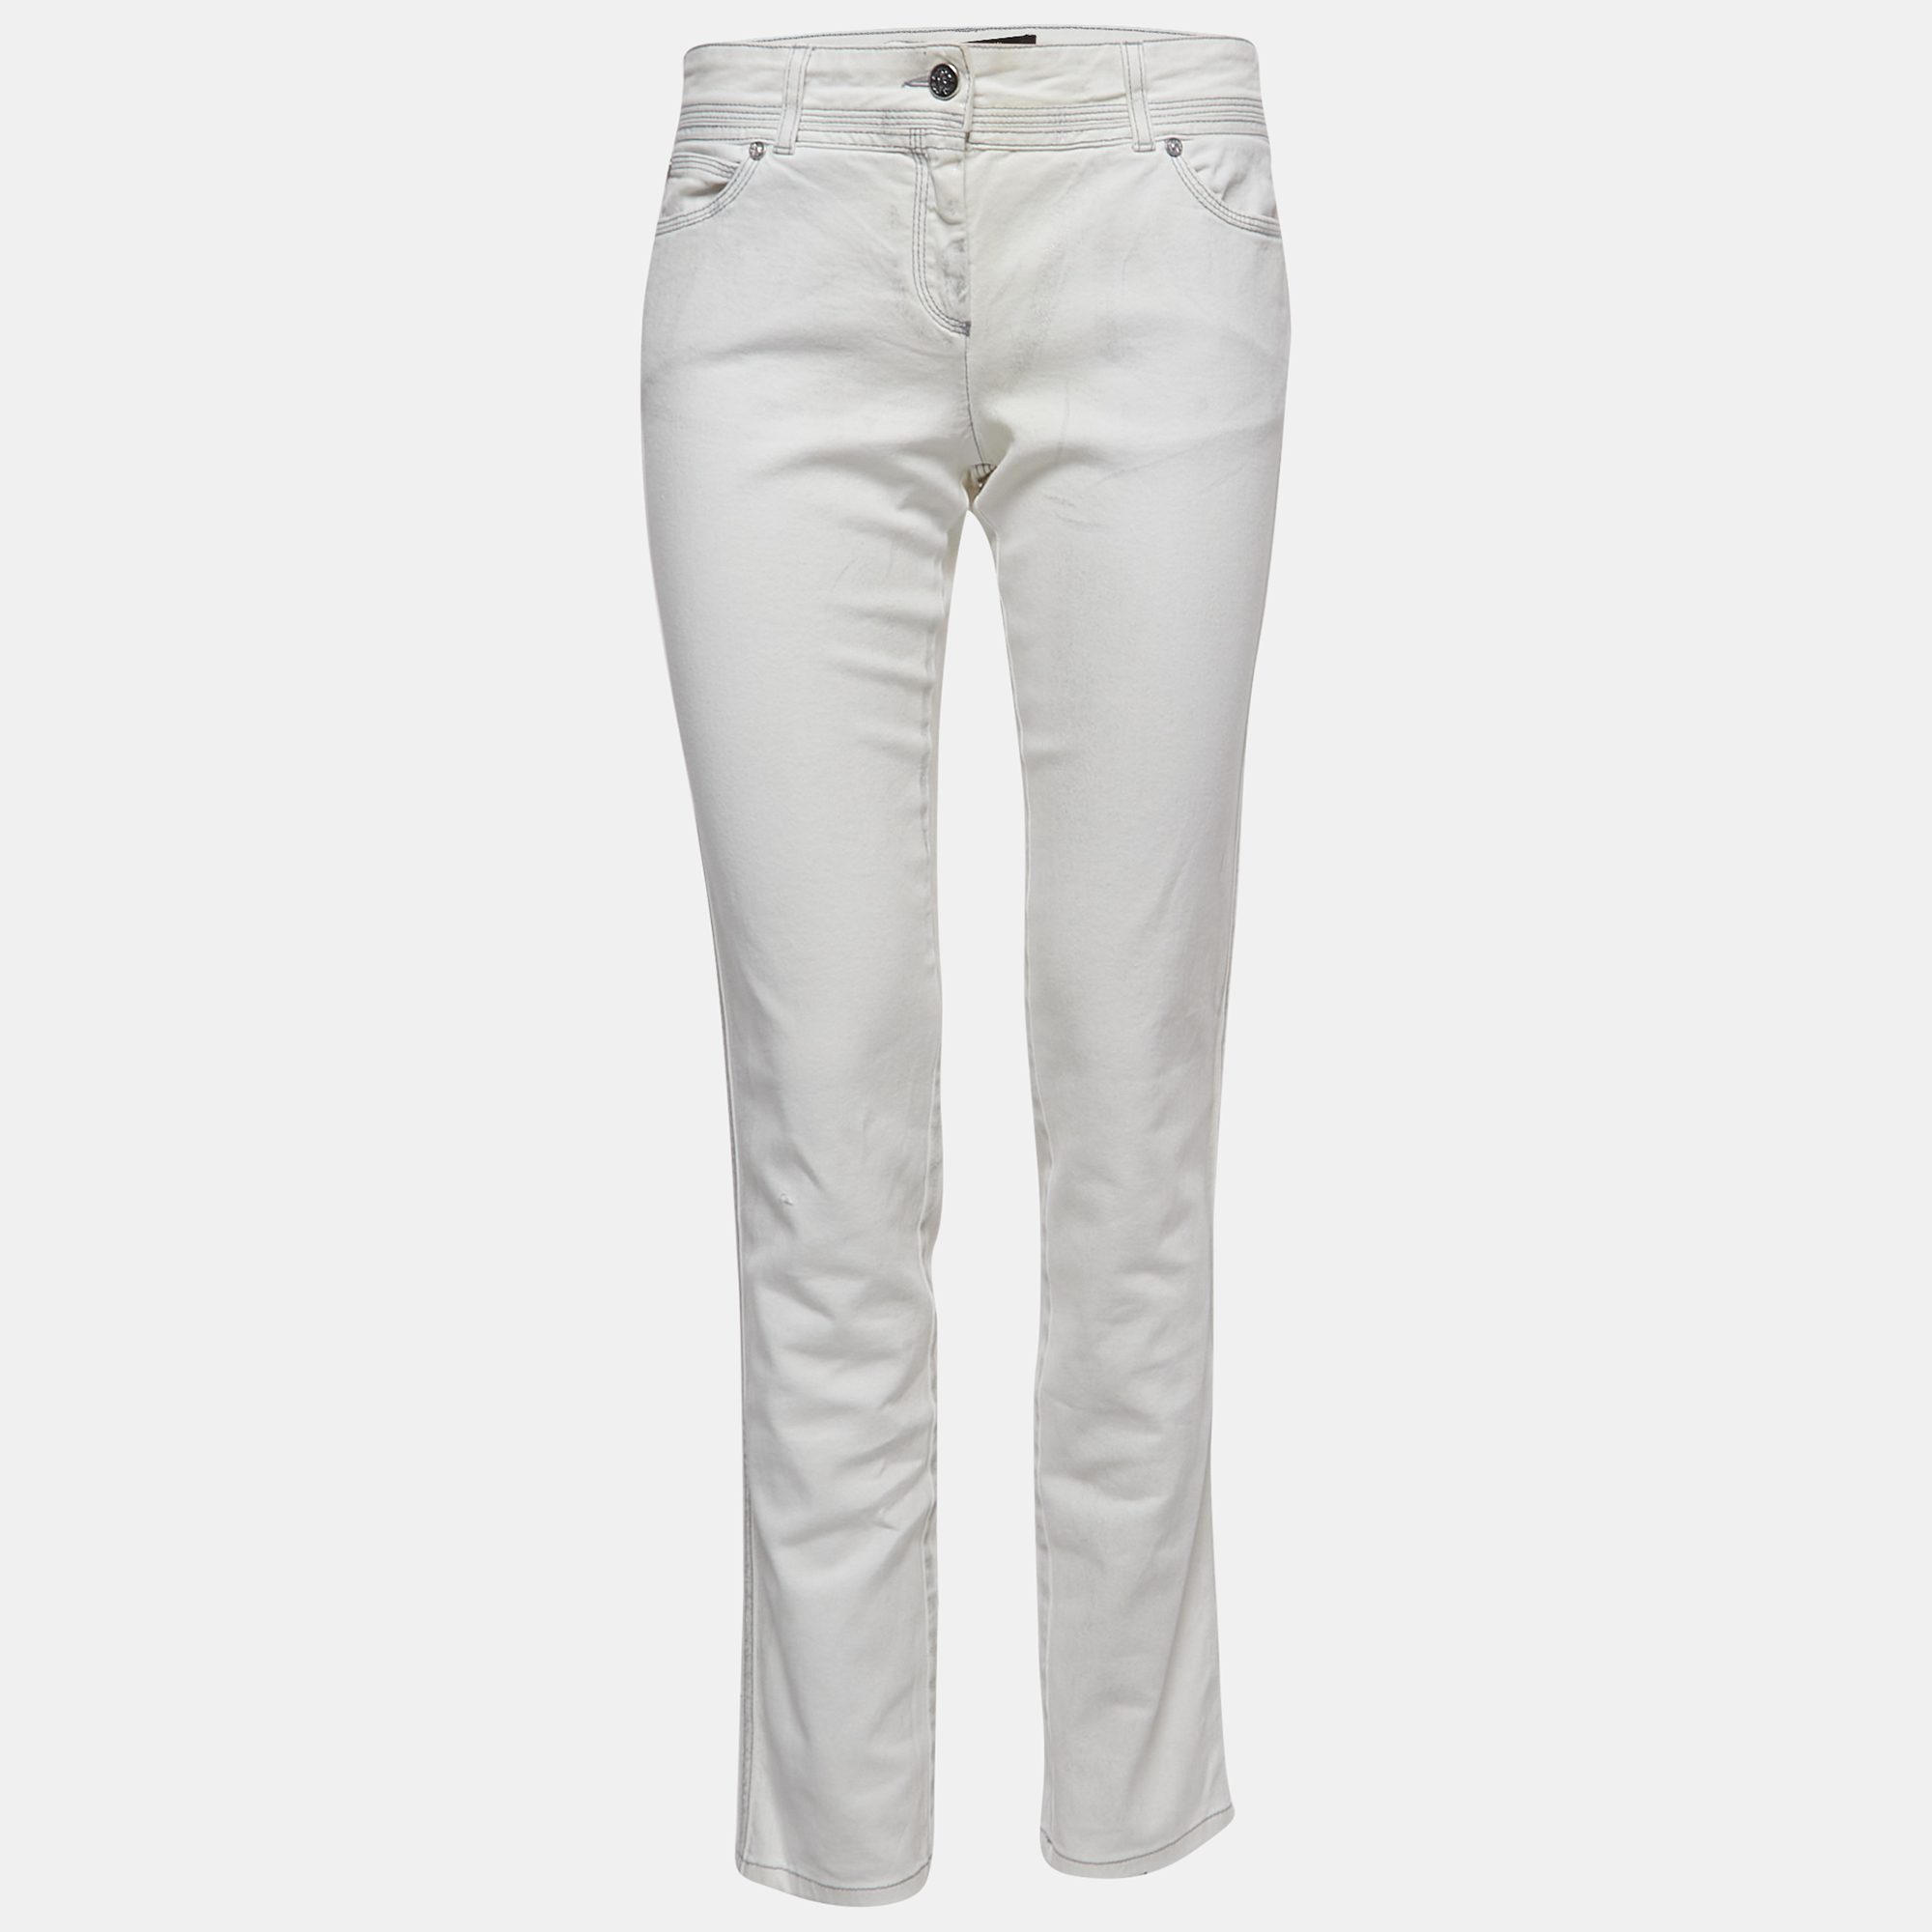 

Roberto Cavalli White Patterned Denim Stitch Detailed Jeans  Waist 30